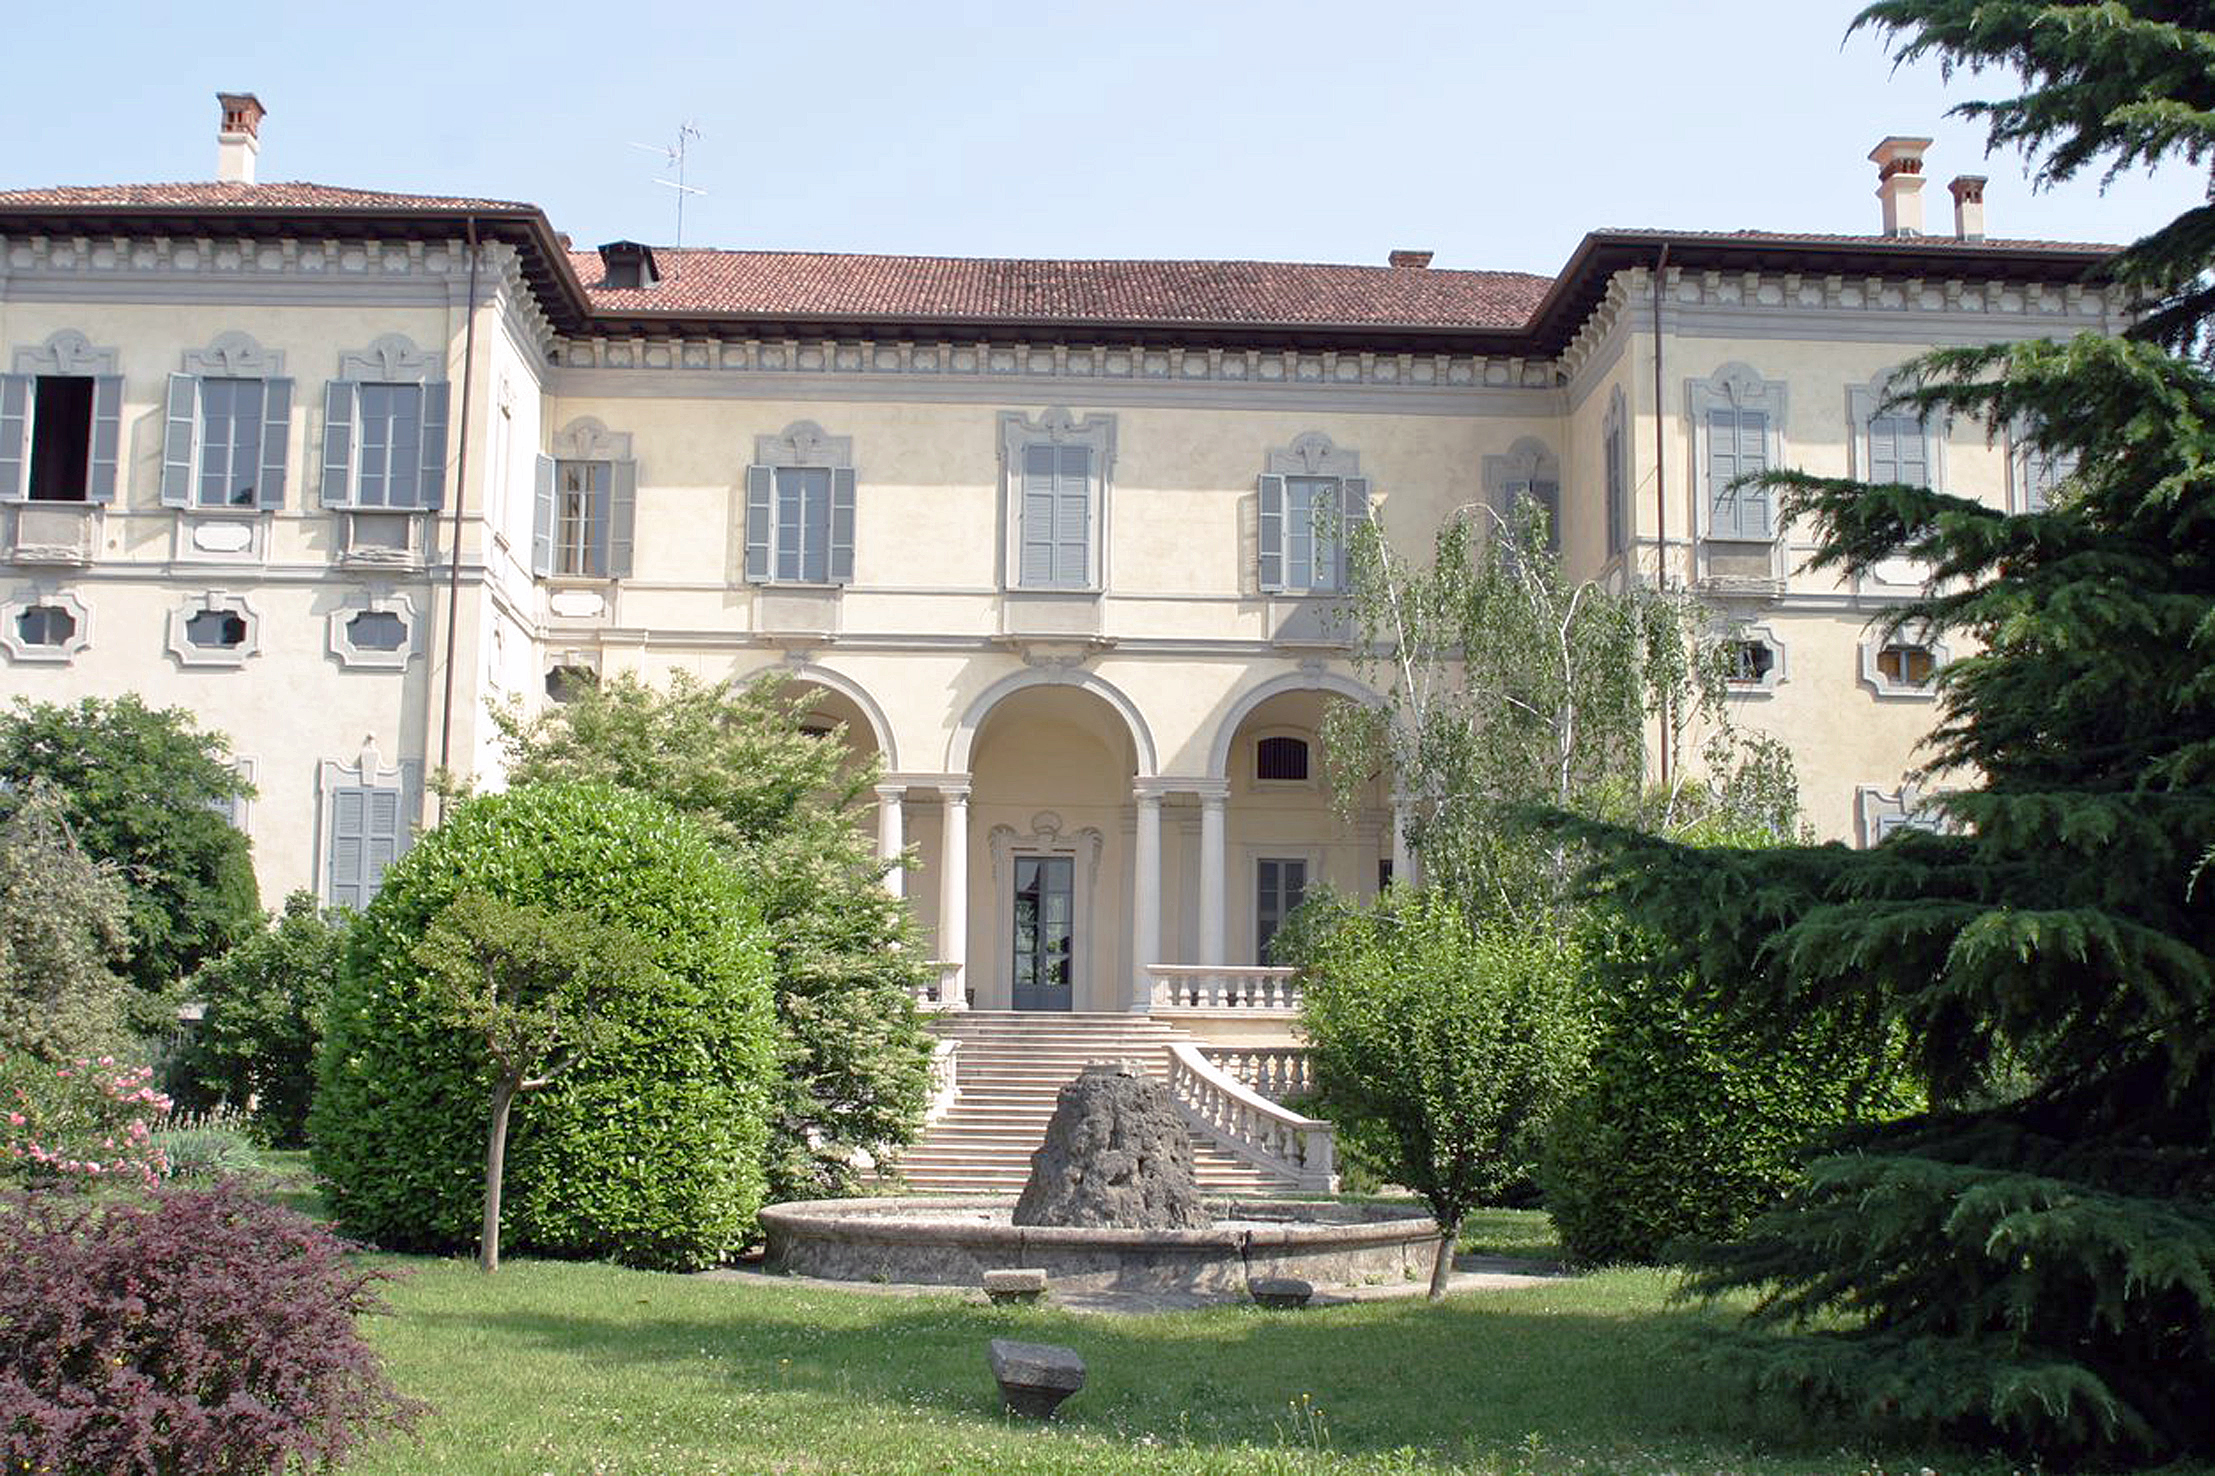 302 Brugherio, Villa Sormani